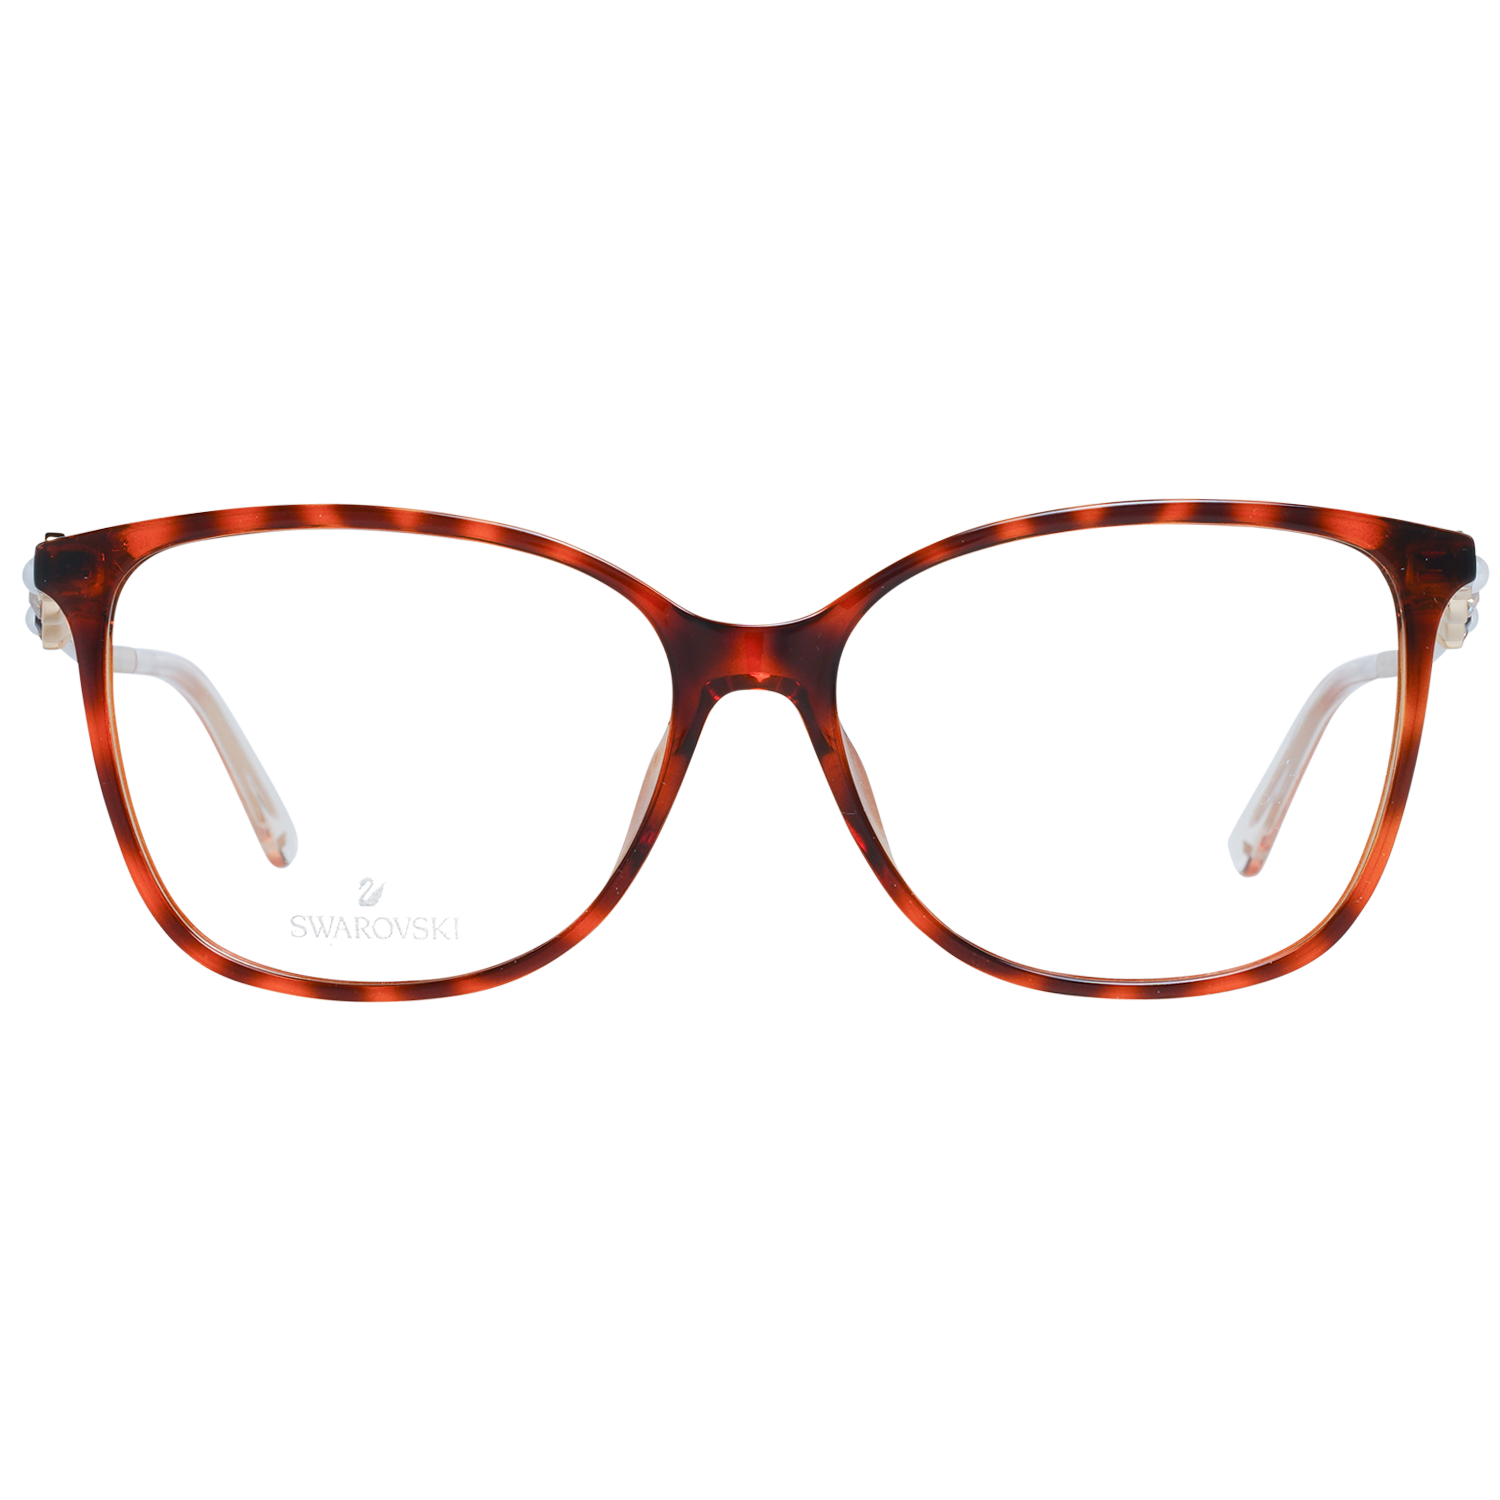 Swarovski Frames Swarovski Women Glasses Optical Frame SK5367 056 55 Eyeglasses Eyewear UK USA Australia 